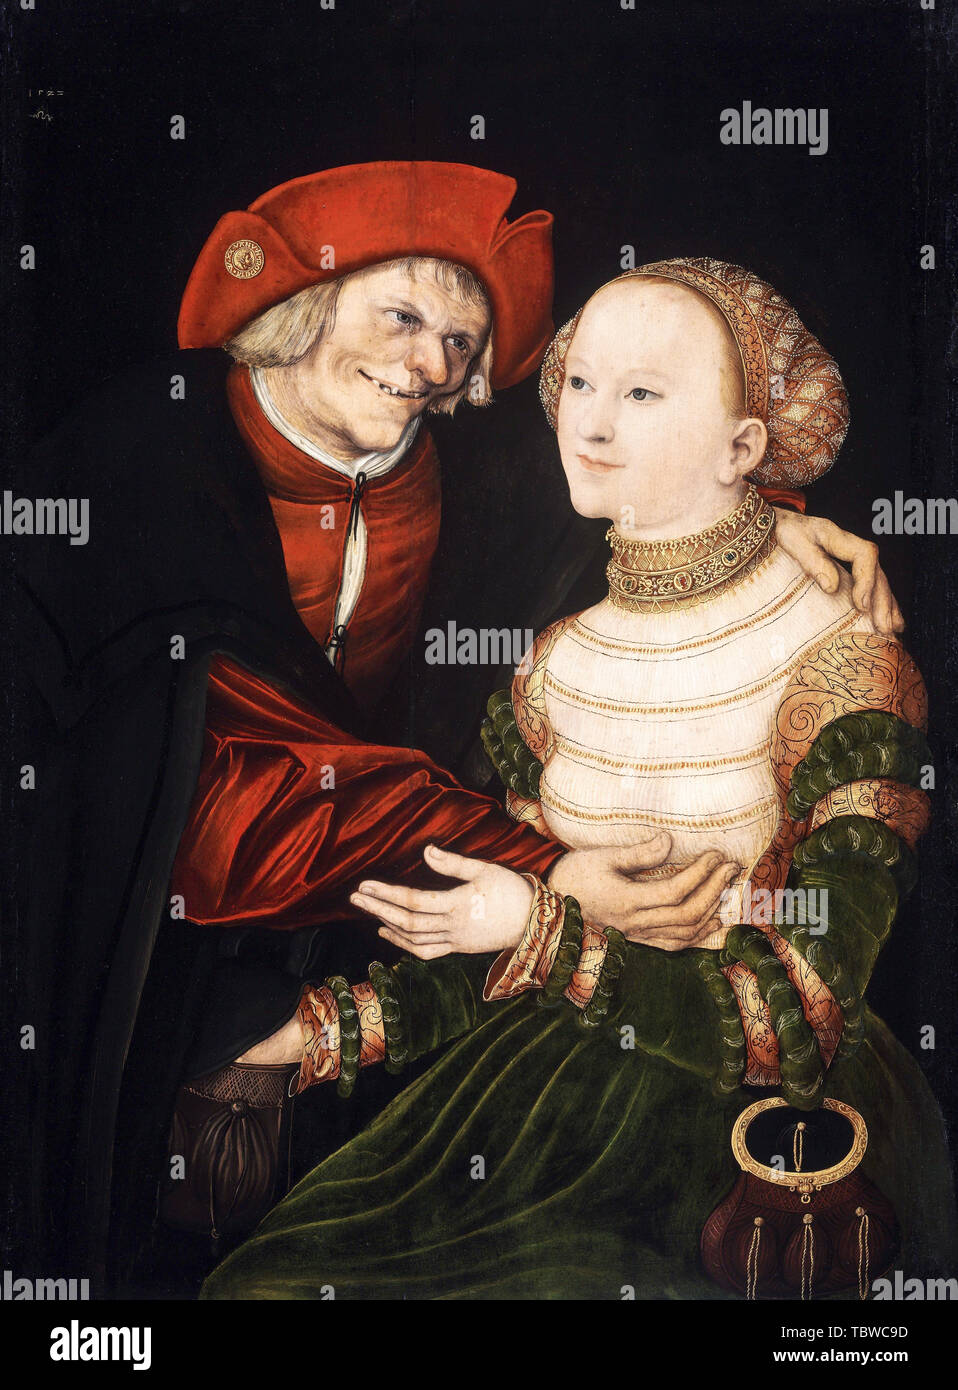 Lucas Cranach, la pareja Ill-Matched, viejo y joven, retrato, 1522 Foto de stock